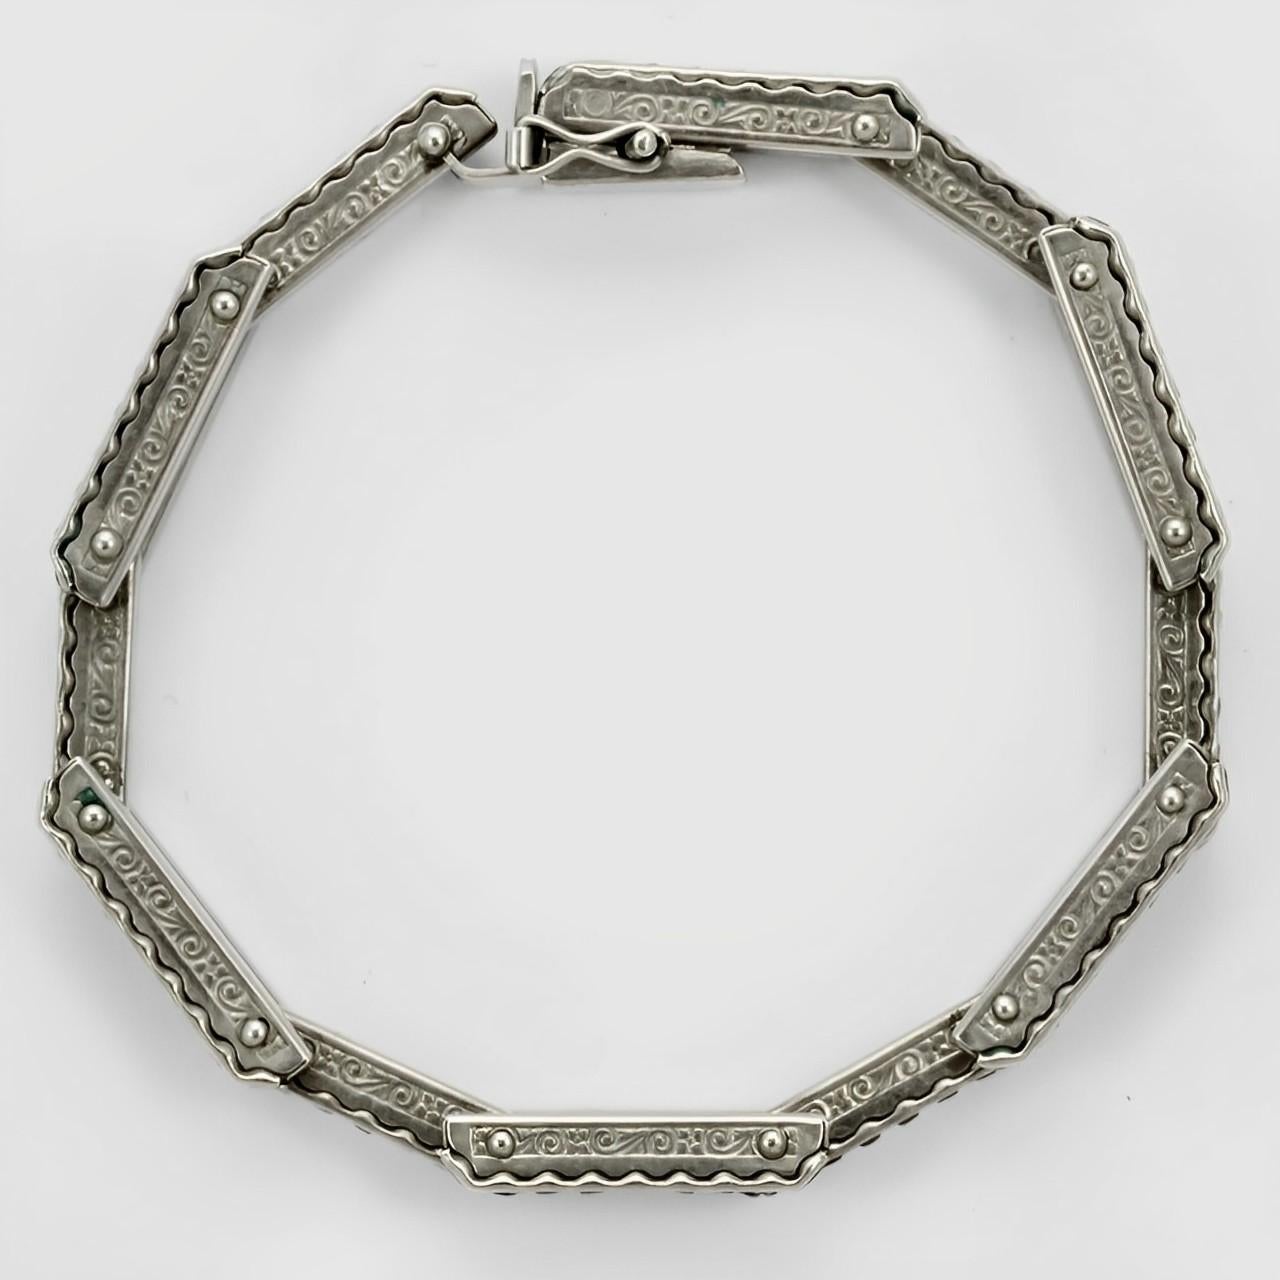 Schreiber & Hiller Art Deco DRGM Silver Tone Rhinestone Link Necklace Bracelet For Sale 1